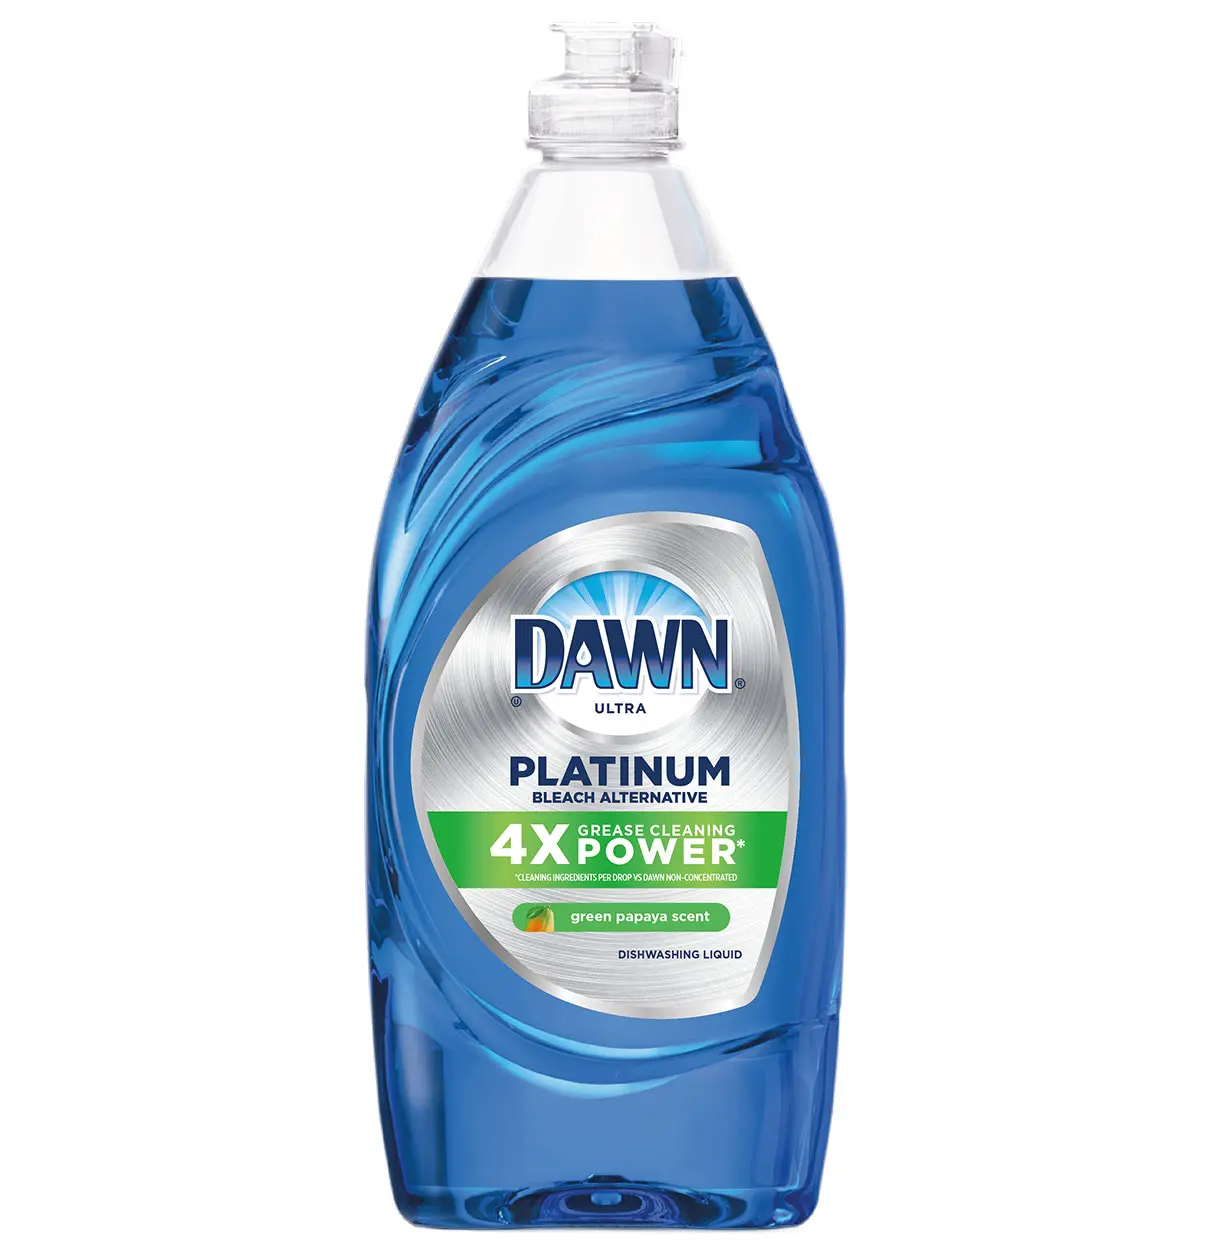 Dawn Platinum Dishwashing Liquid Green Papaya